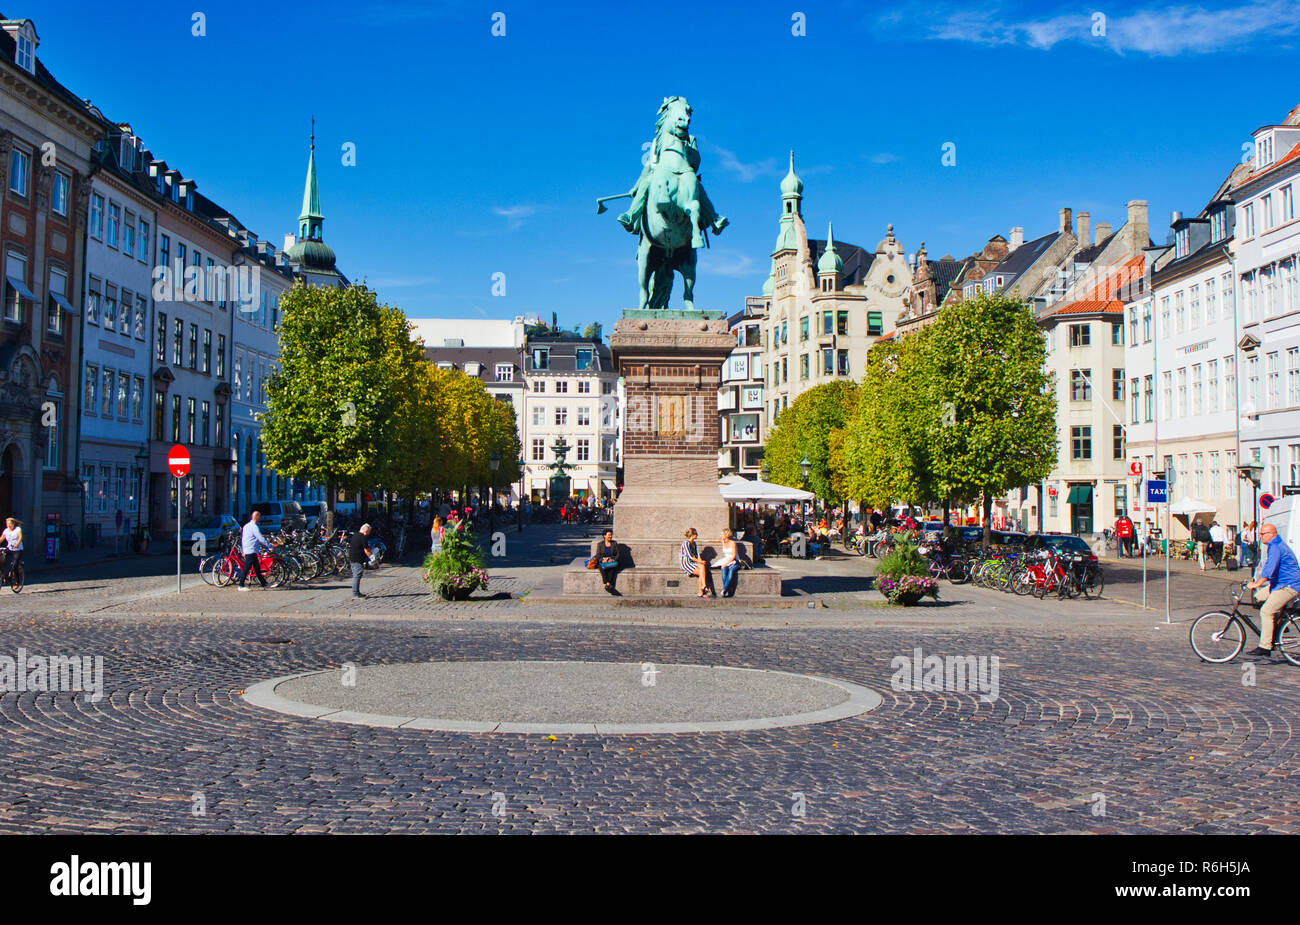 Statue équestre en bronze de l'évêque Absalon, fondateur de Copenhague, Hojbro Plads, Indre par, Copenhague, Danemark, Scandinavie Banque D'Images